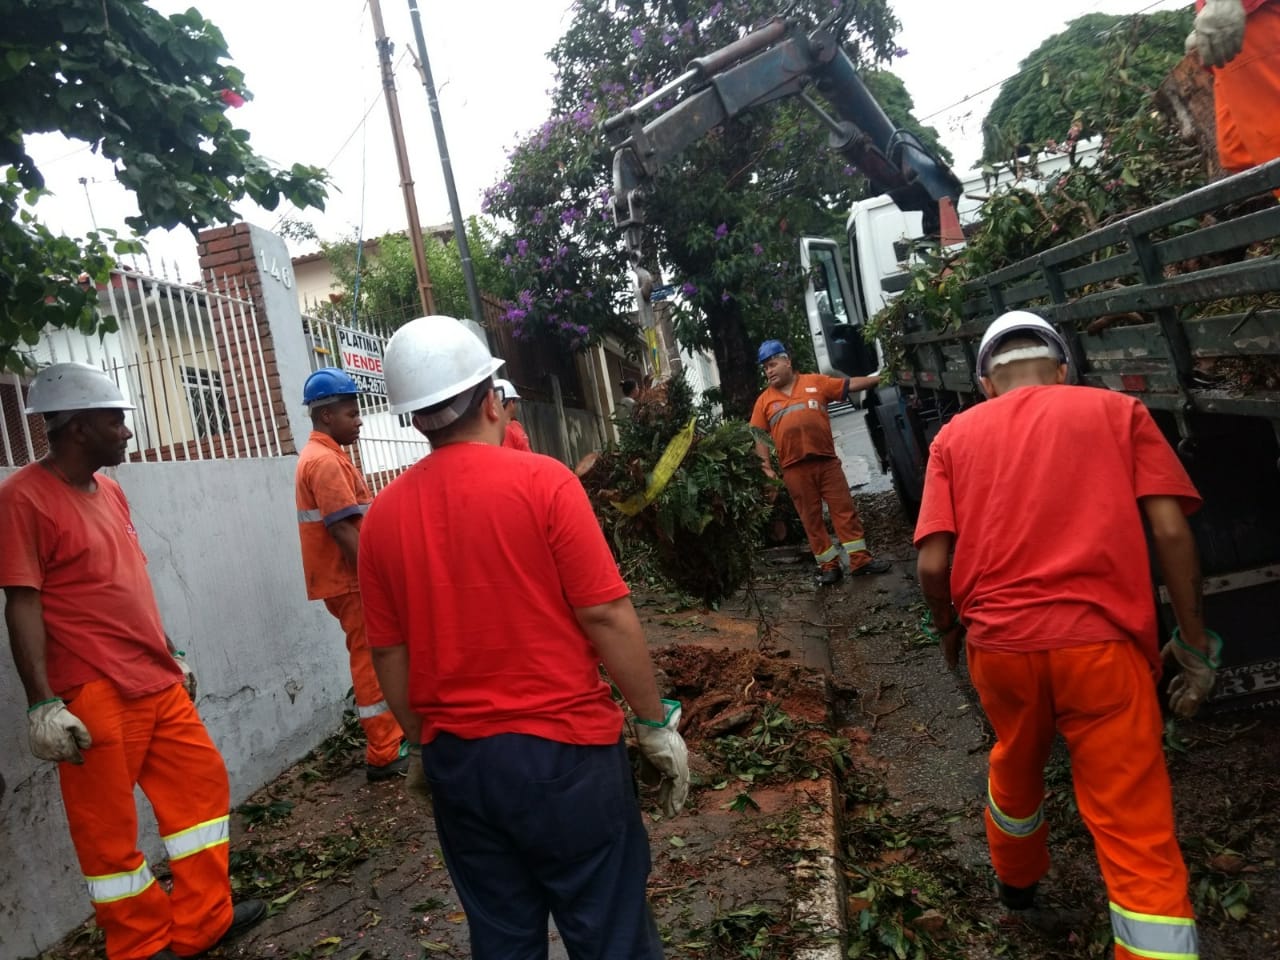 Sete funcionários da Subprefeitura Ipiranga vestidos com uniforme na cor laranja e capacete branco estão recolhendo restos de podas e galhos de árvores com o auxílio de um guincho